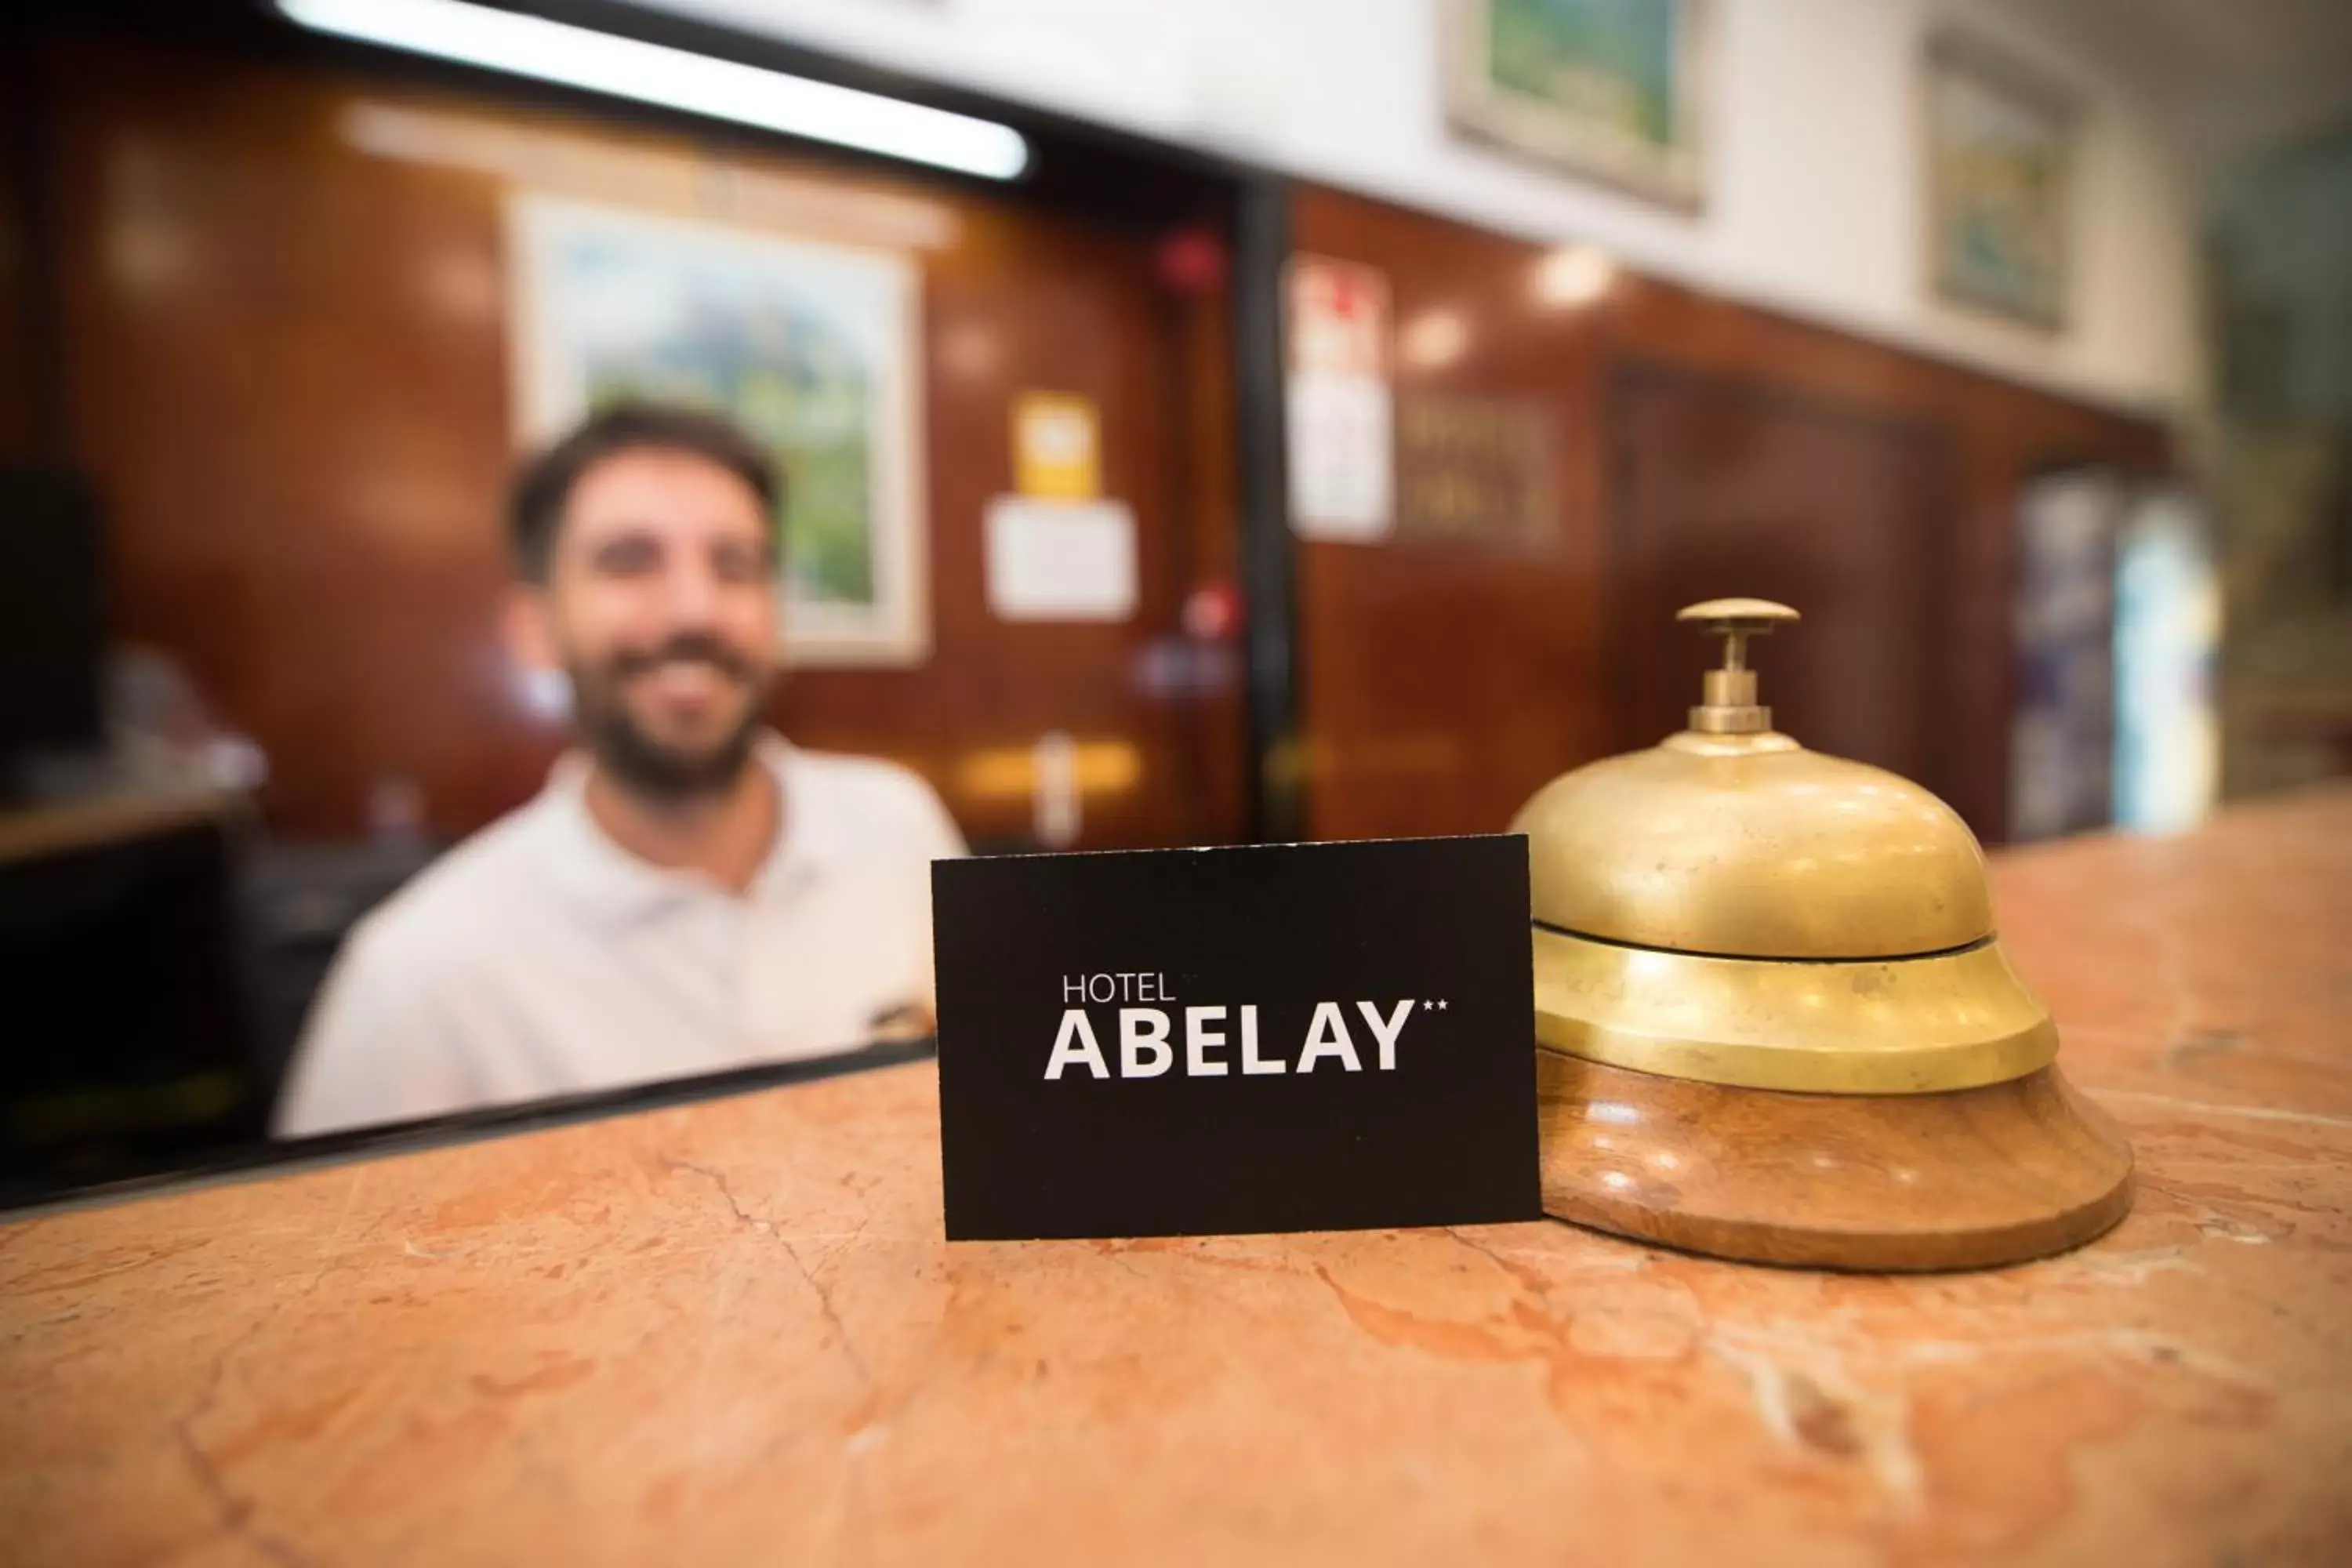 Lobby or reception, Lobby/Reception in Hotel Abelay